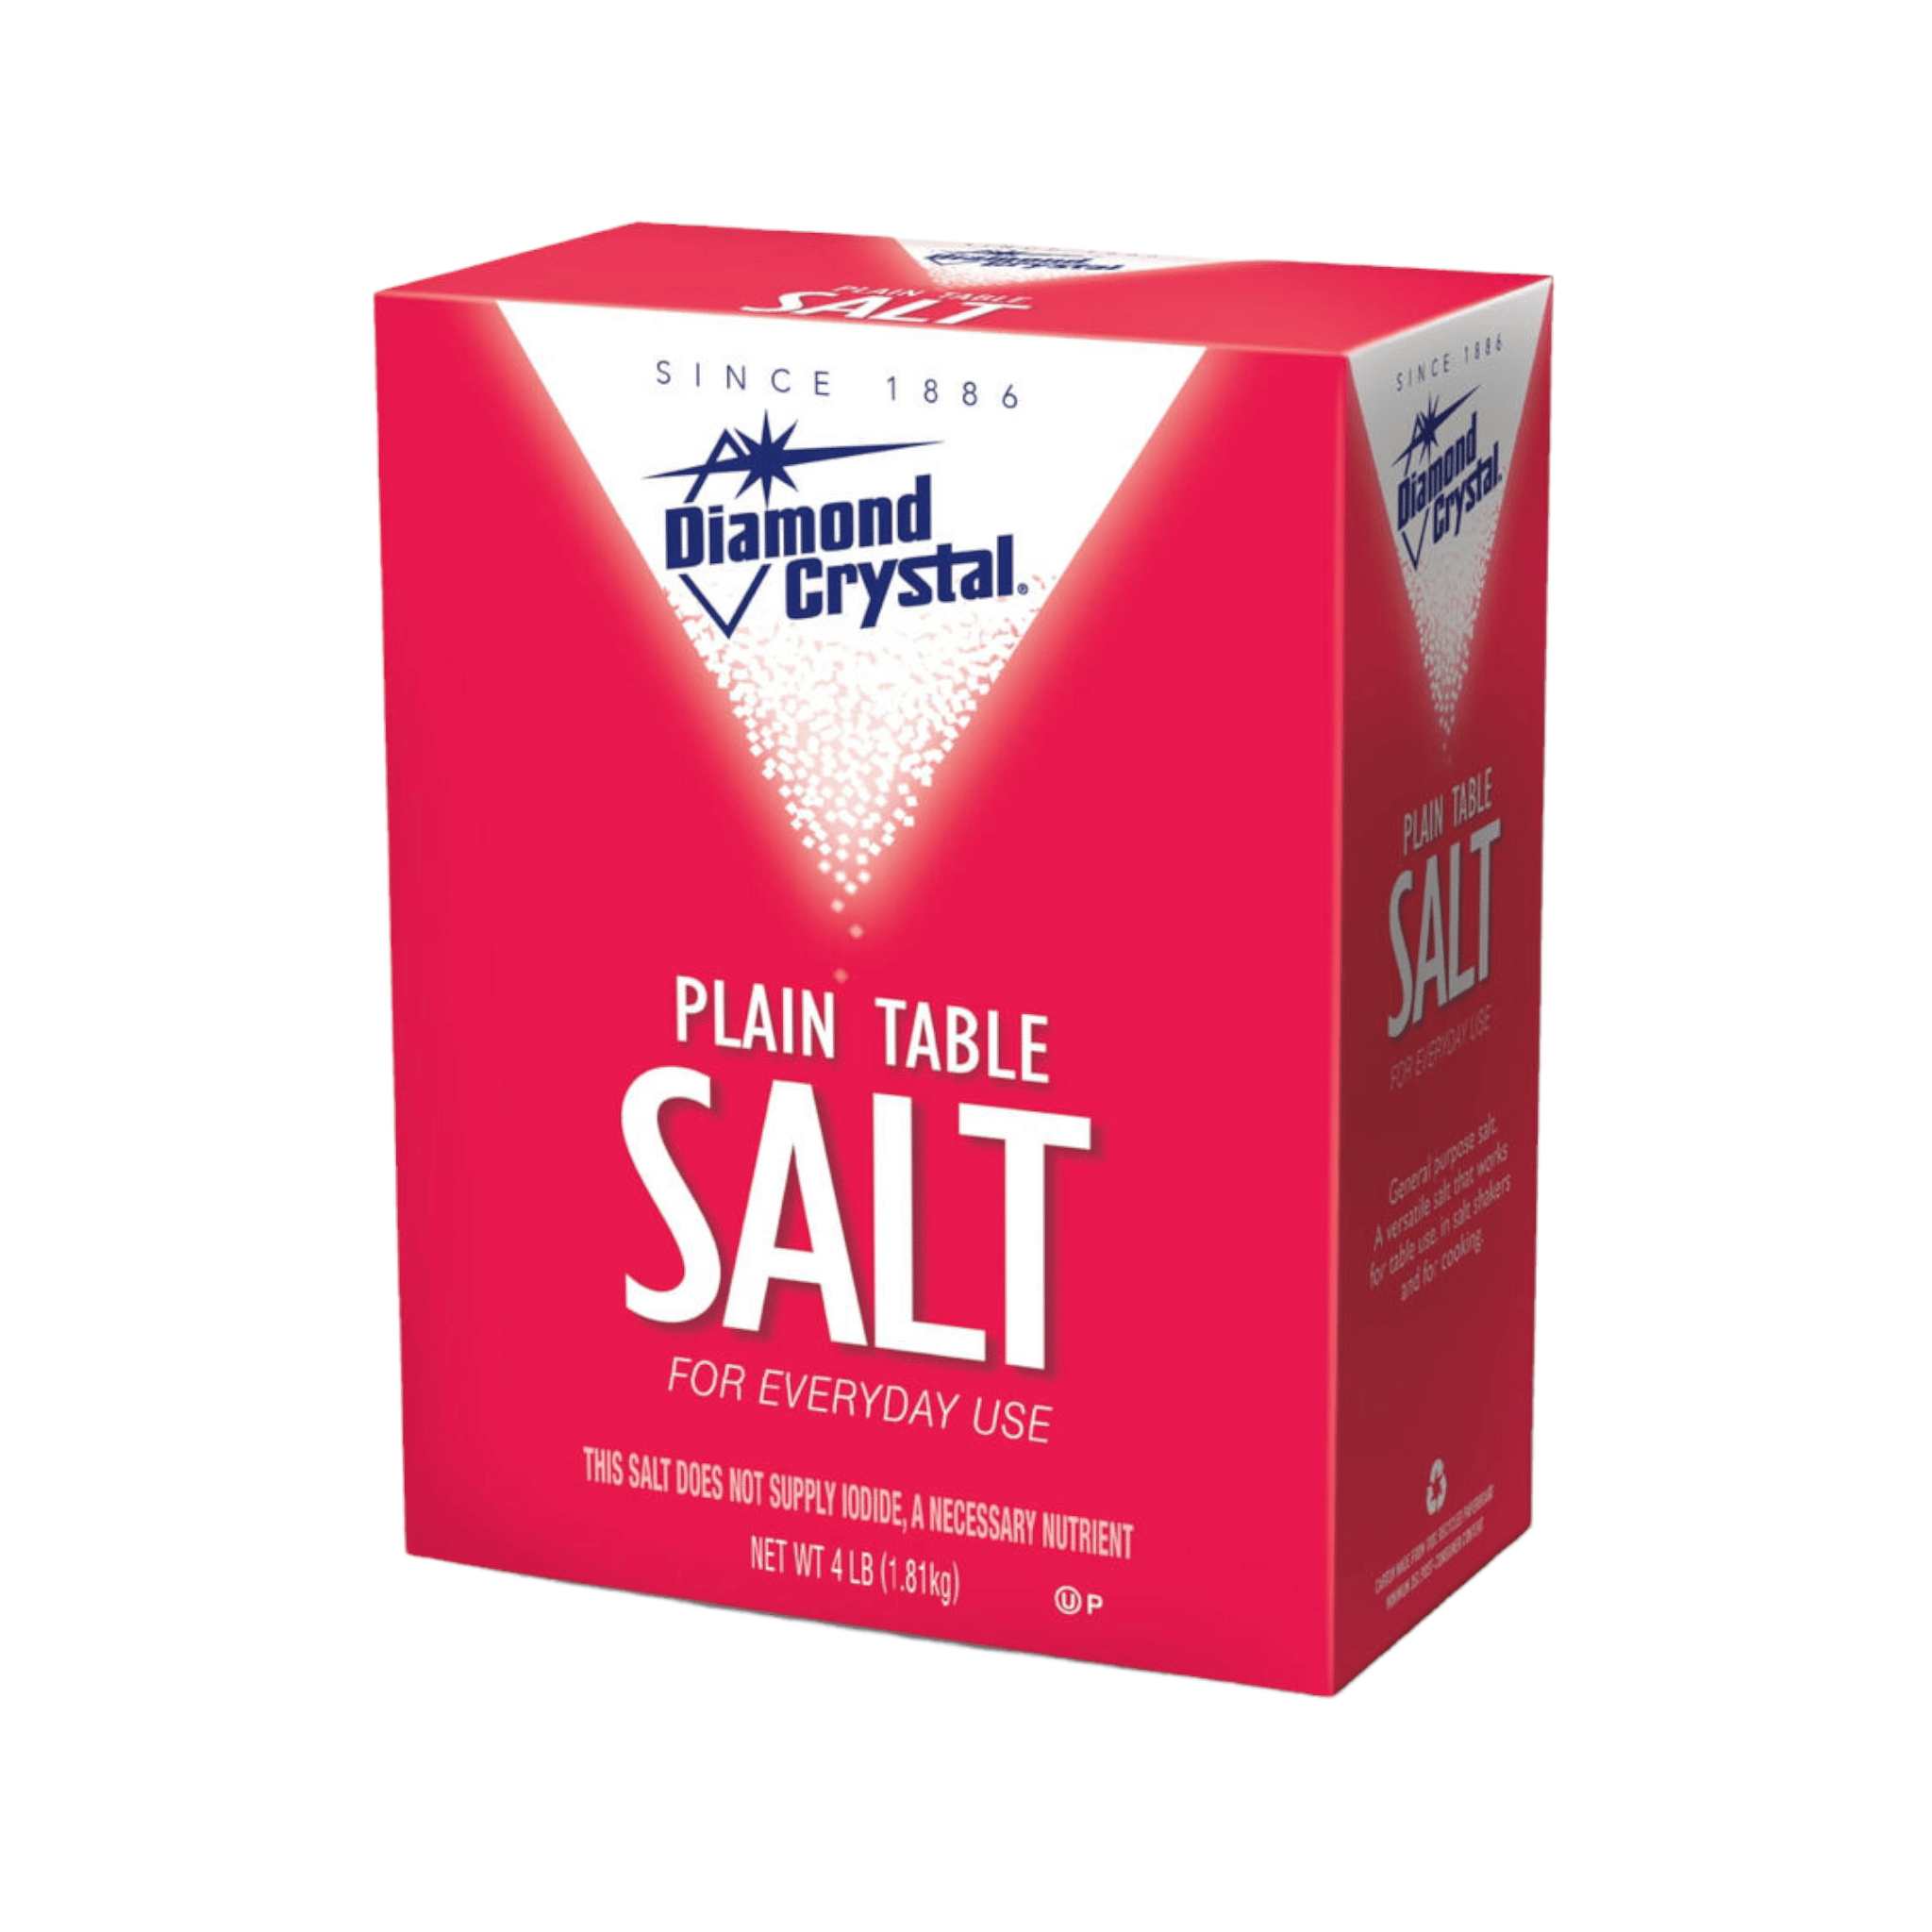 Diamond Crystal Kosher Salt, 26 oz